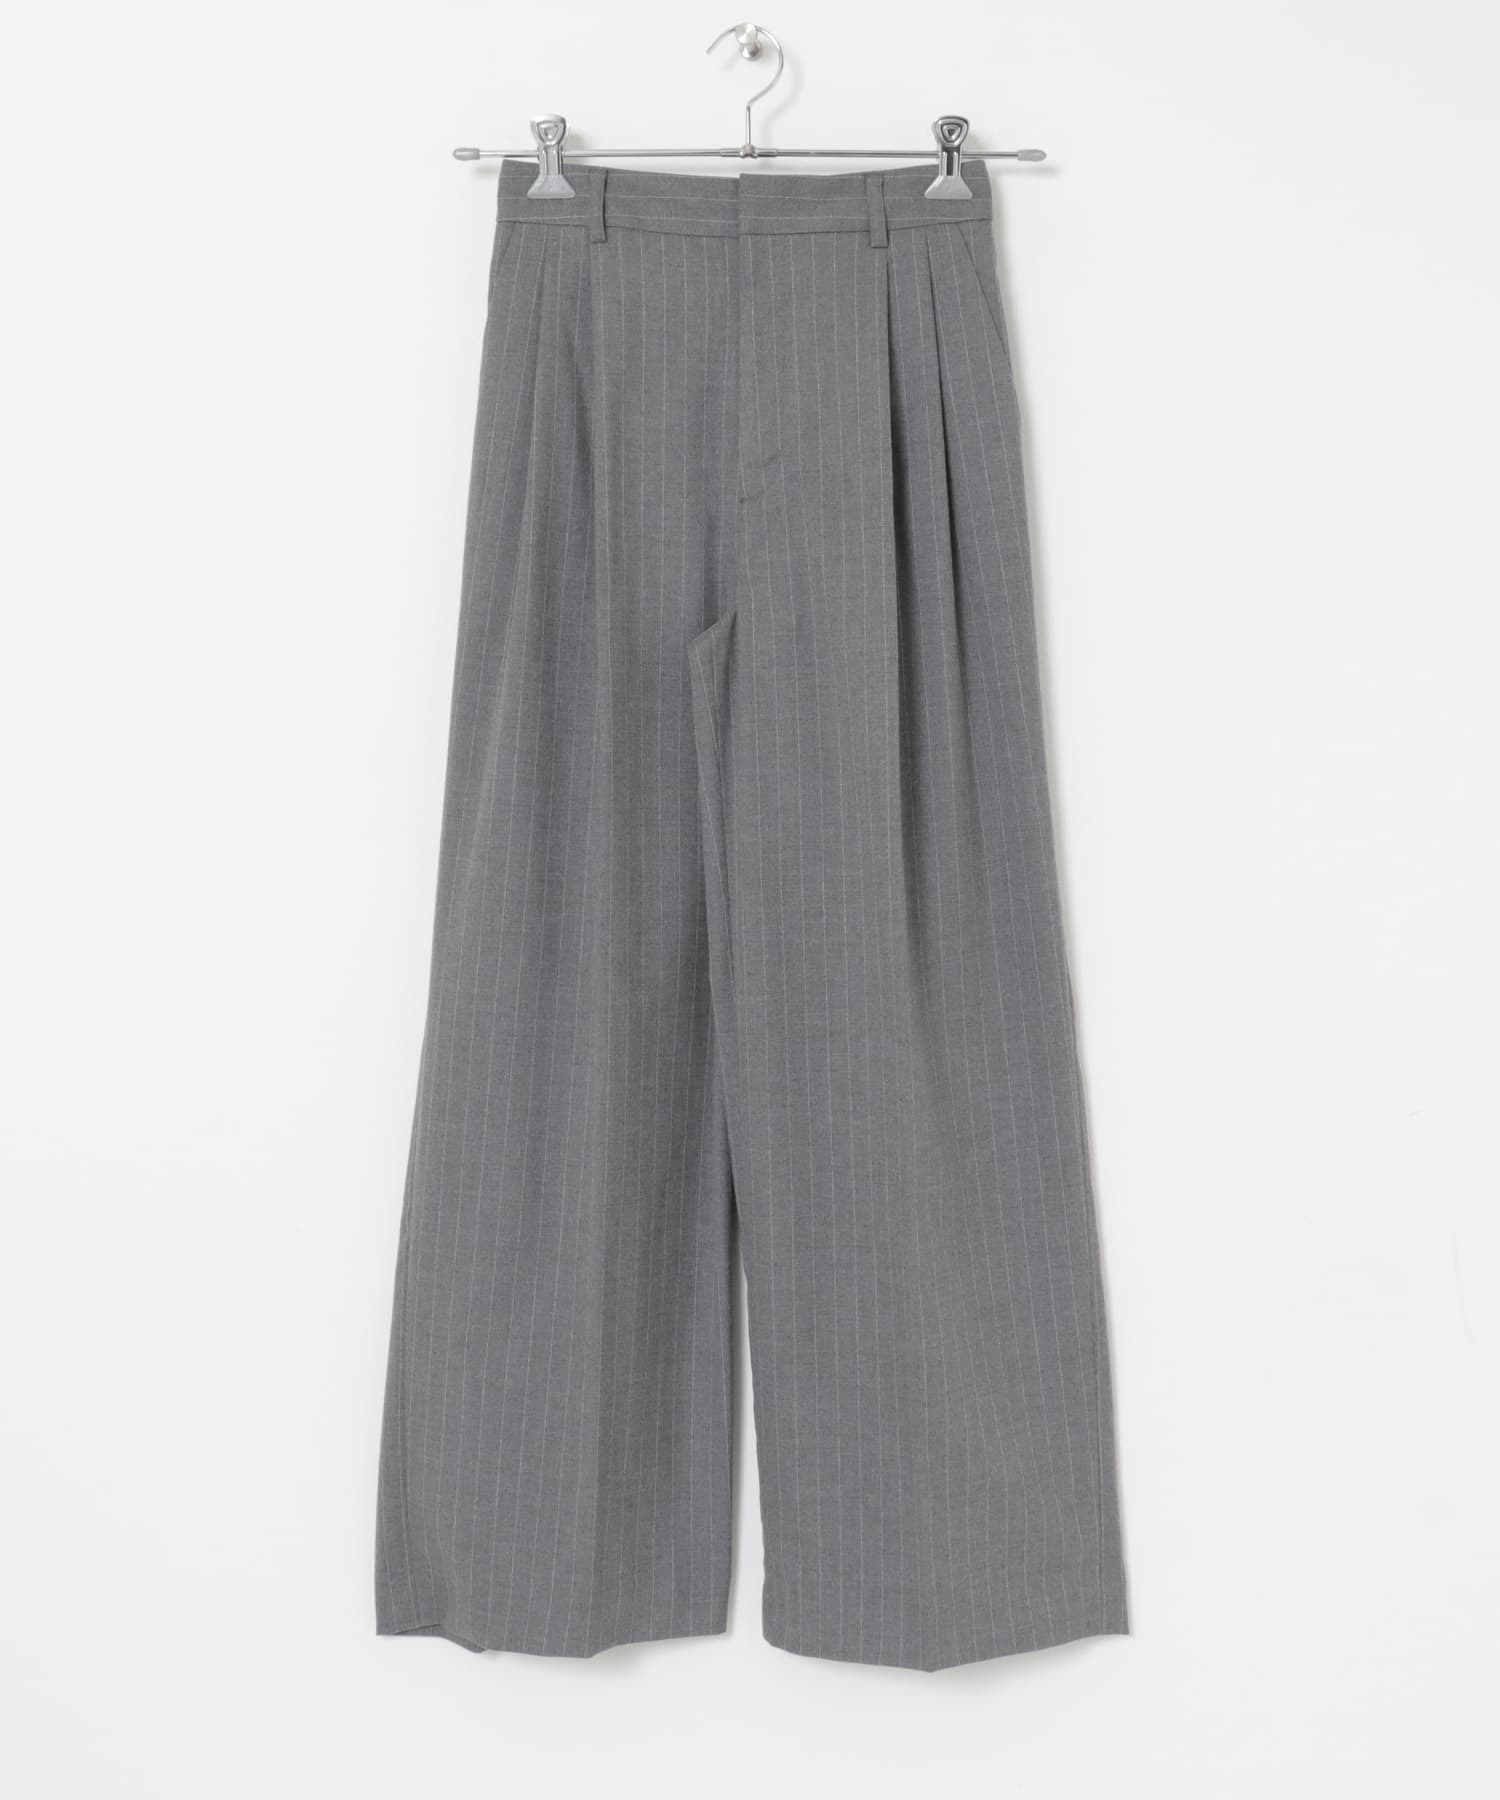 直條紋寬褲(灰色-38-GRAY)